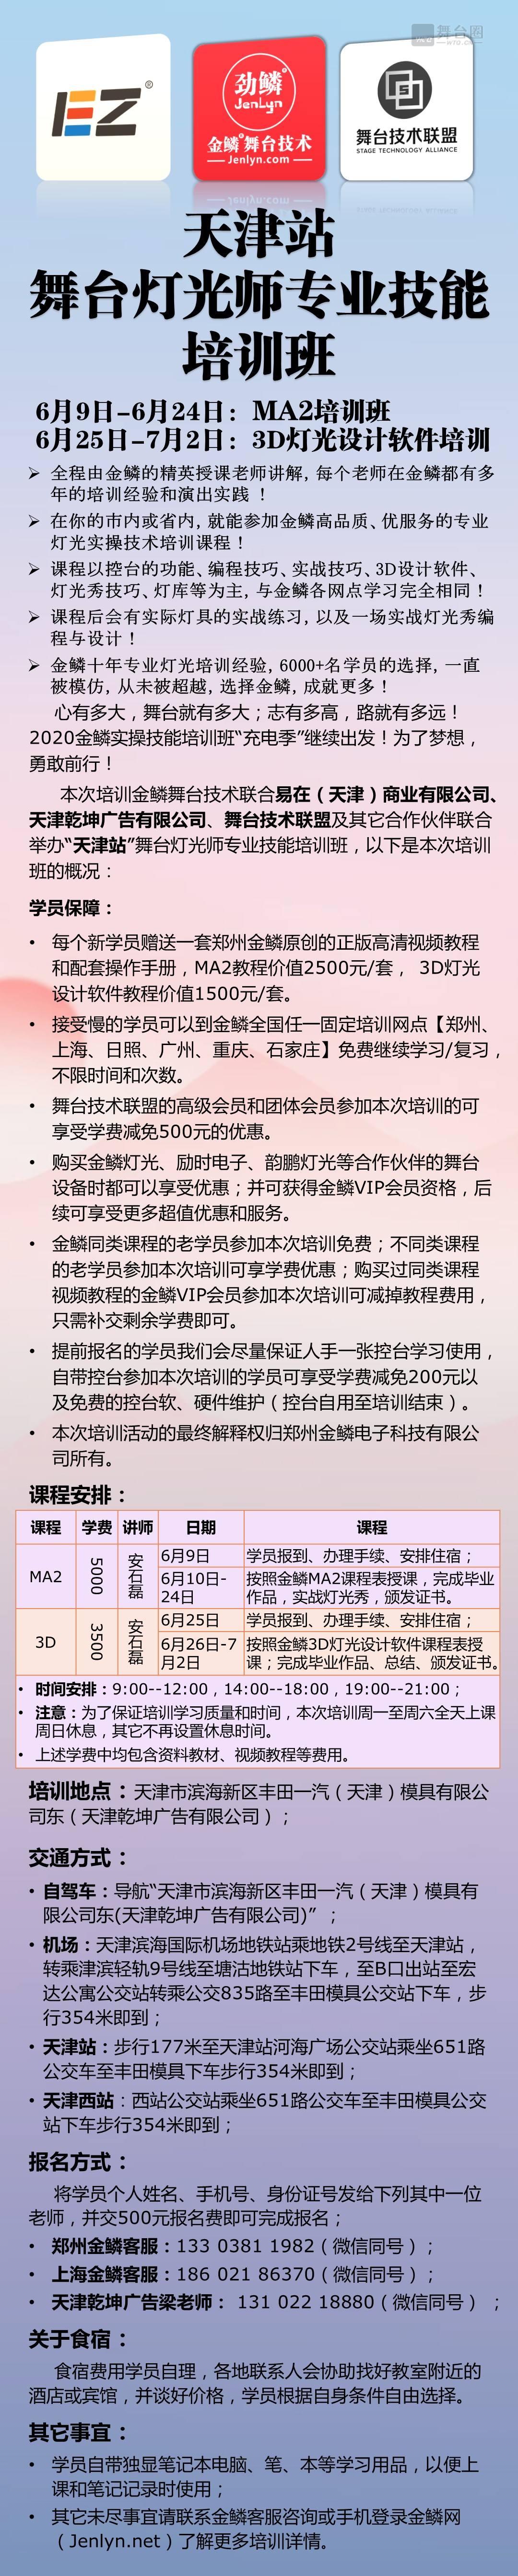 20200609天津站培训.JPG